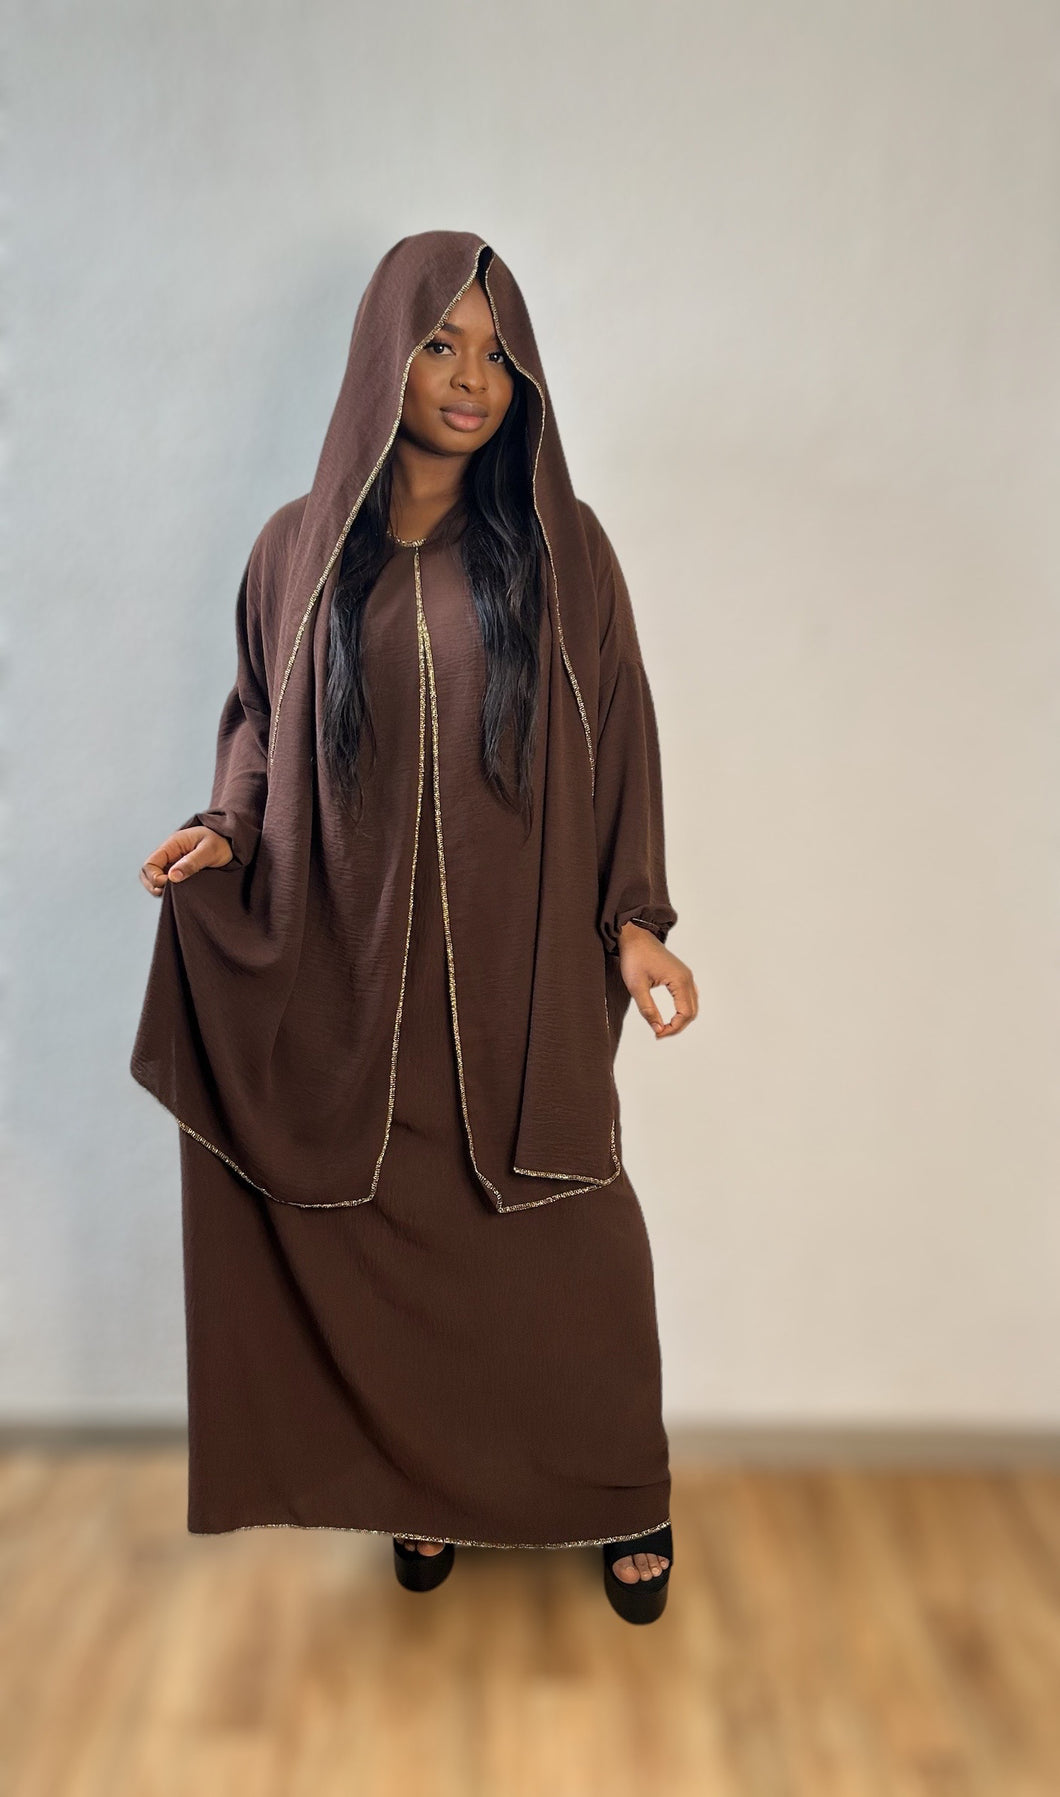 Détail du produit

Robe Abaya marron avec voile intégré